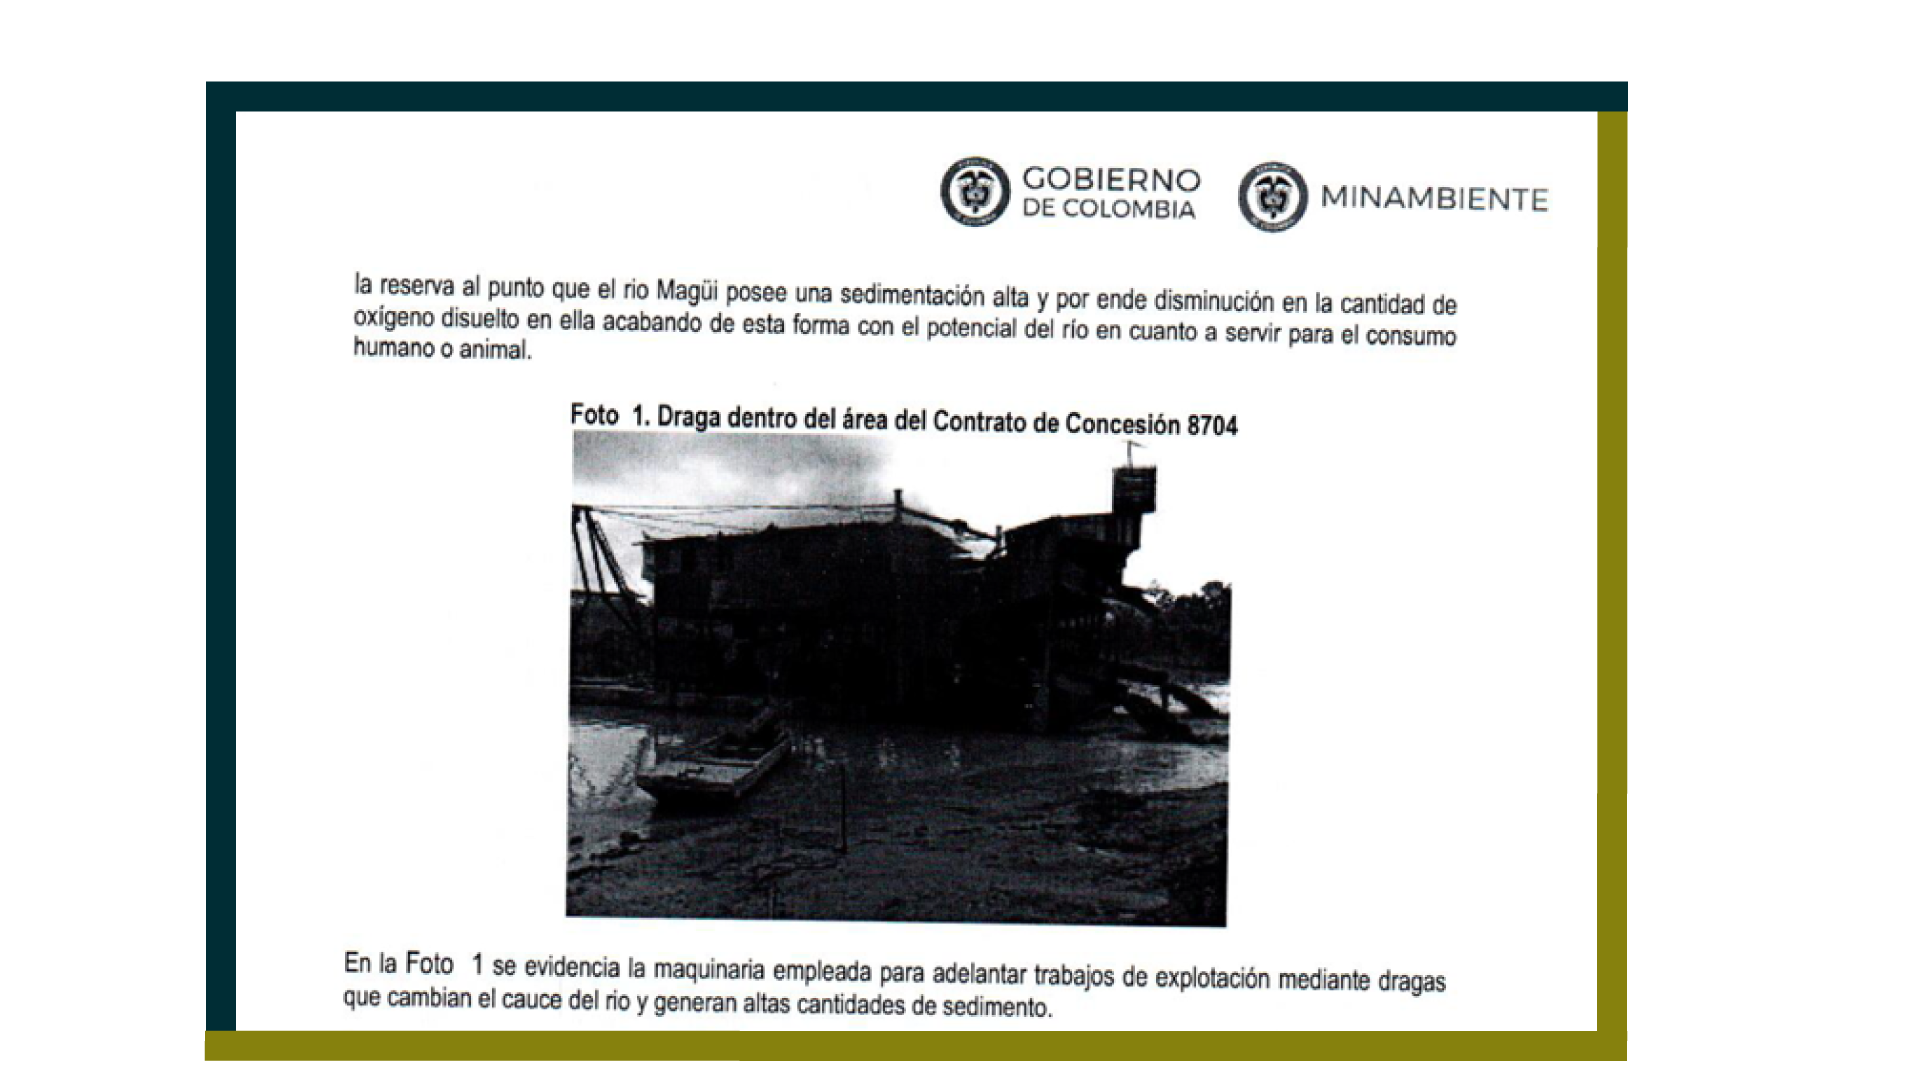 Fragmento del informe técnico del Ministerio de Ambiente, que resalta la existencia de una draga dentro del área minera.